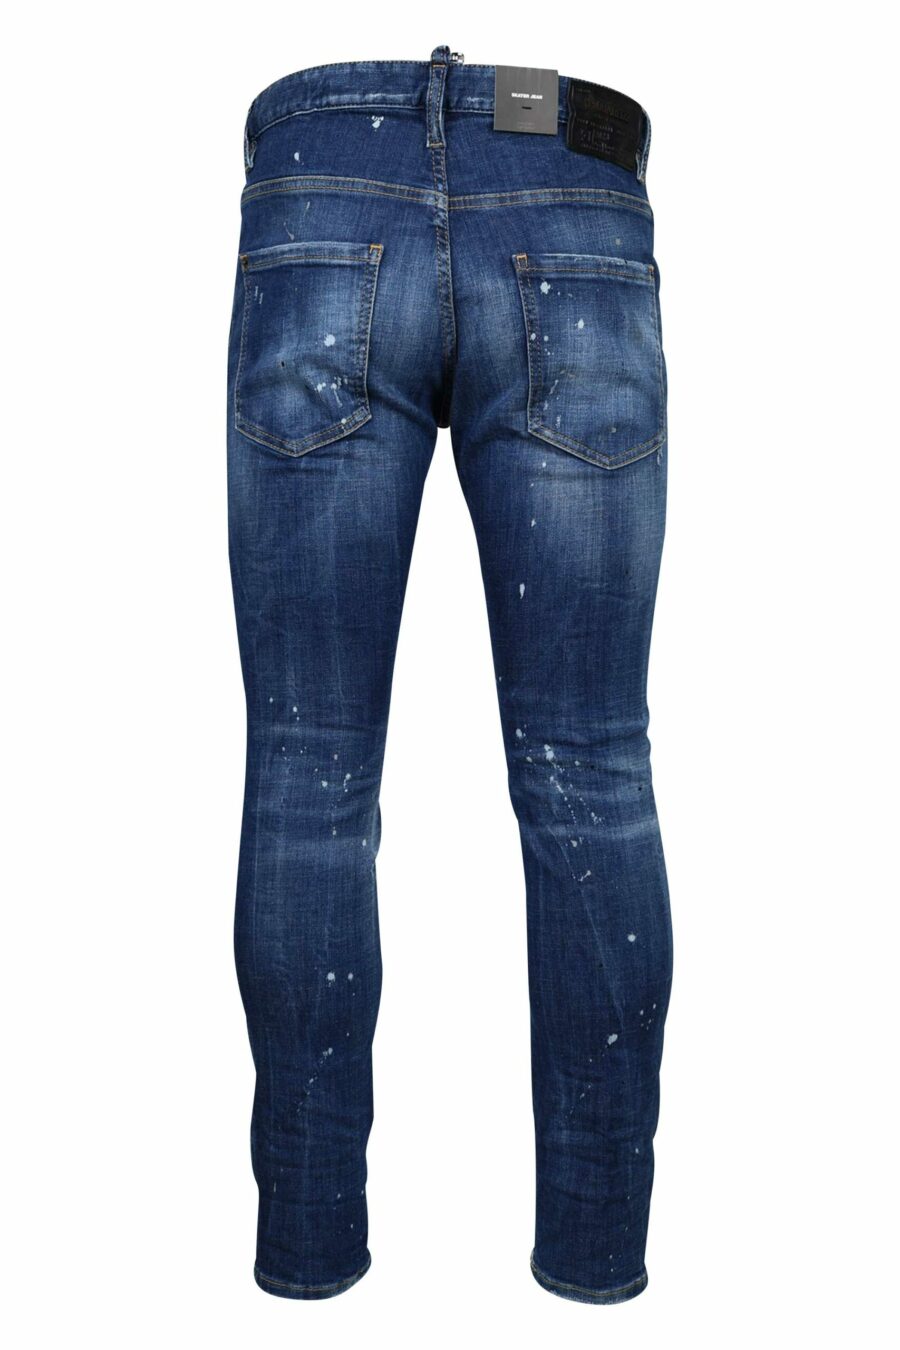 Blaue "Skater-Jeans" mit Rissen und ausgefranst - 8054148124687 2 1 skaliert